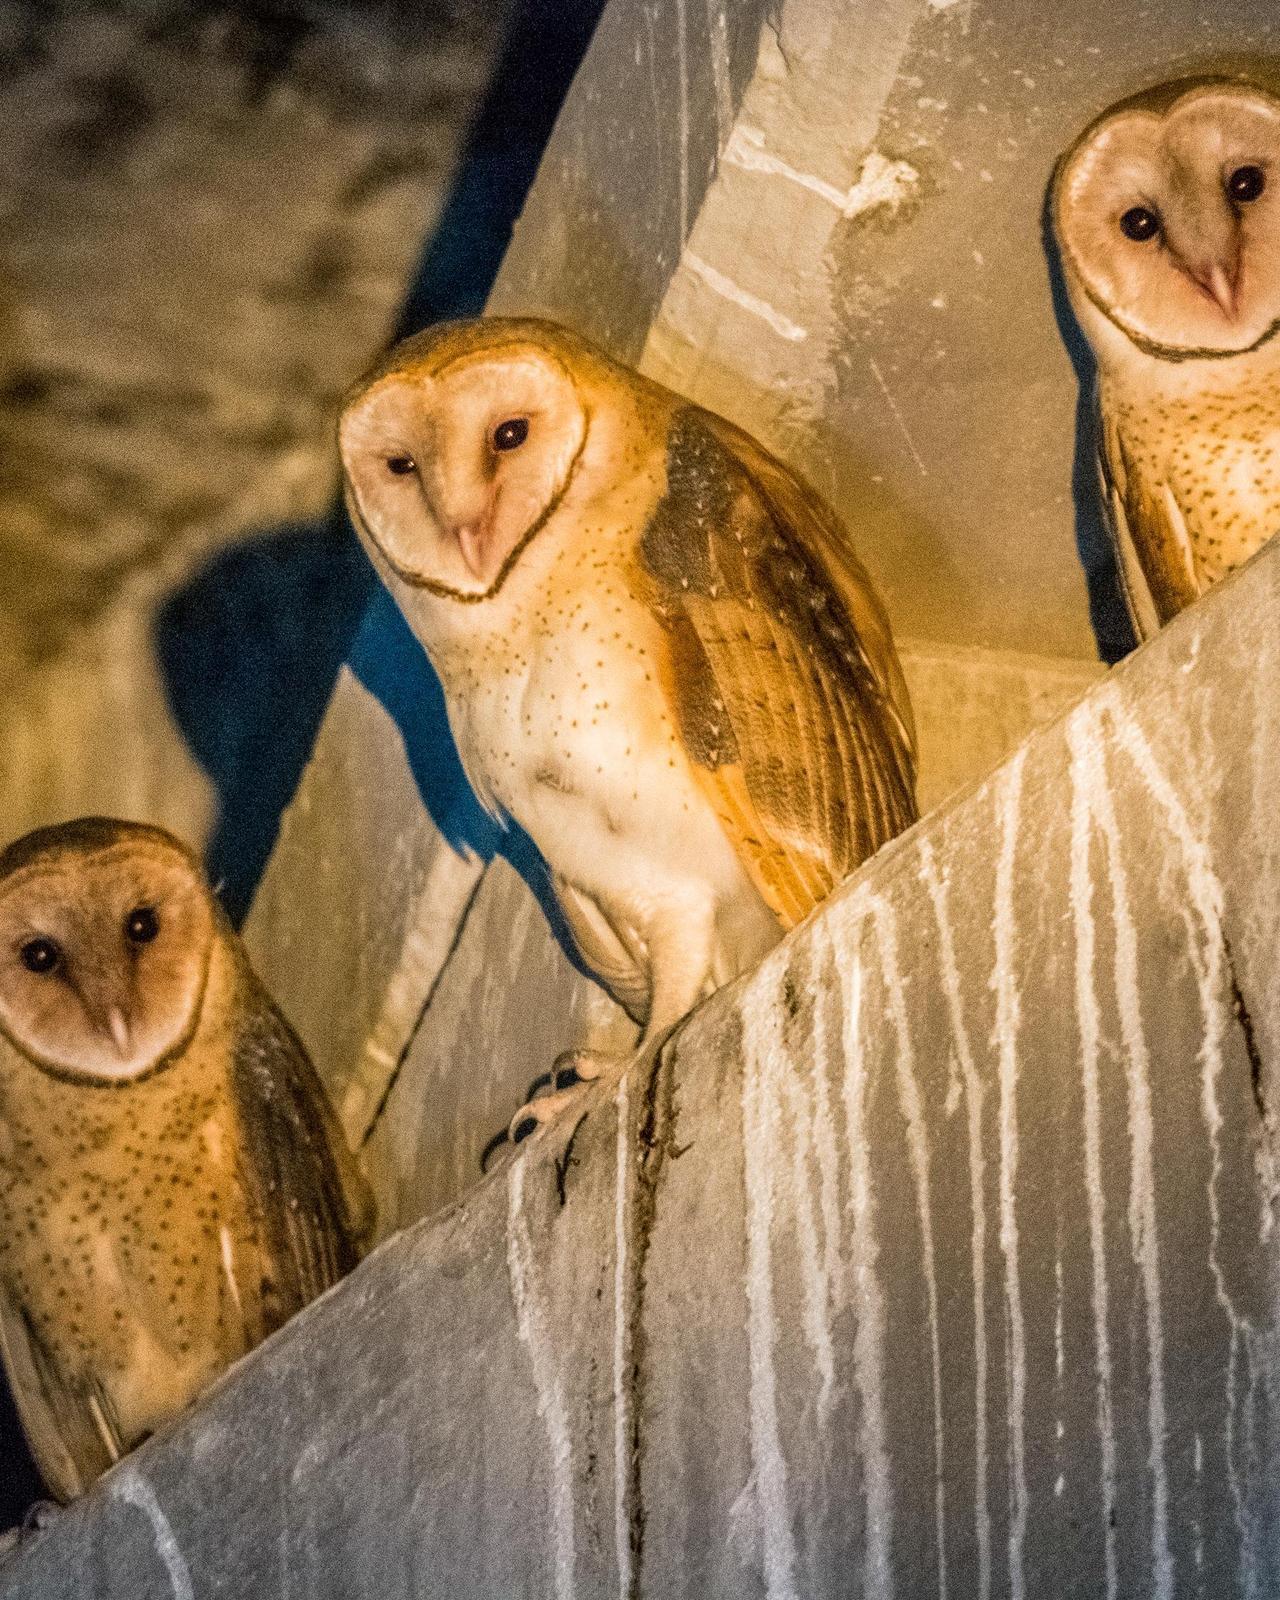 Barn Owl Photo by Hugo Gonzalez